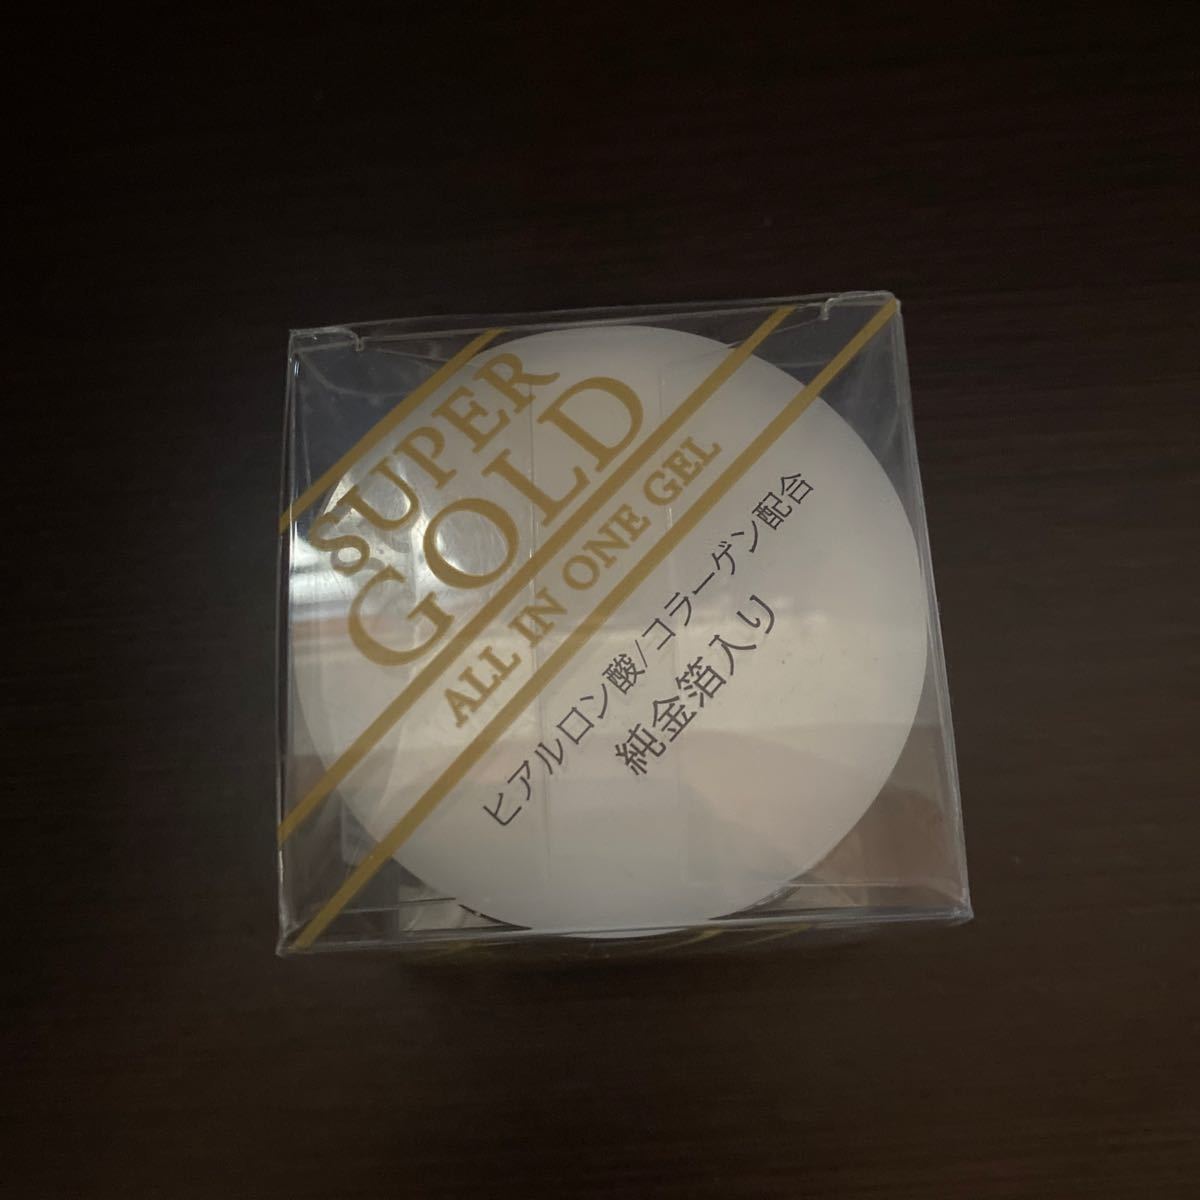 日本製 スーパーゴールド 純金箔入 オールインワンジェル GLD 50g